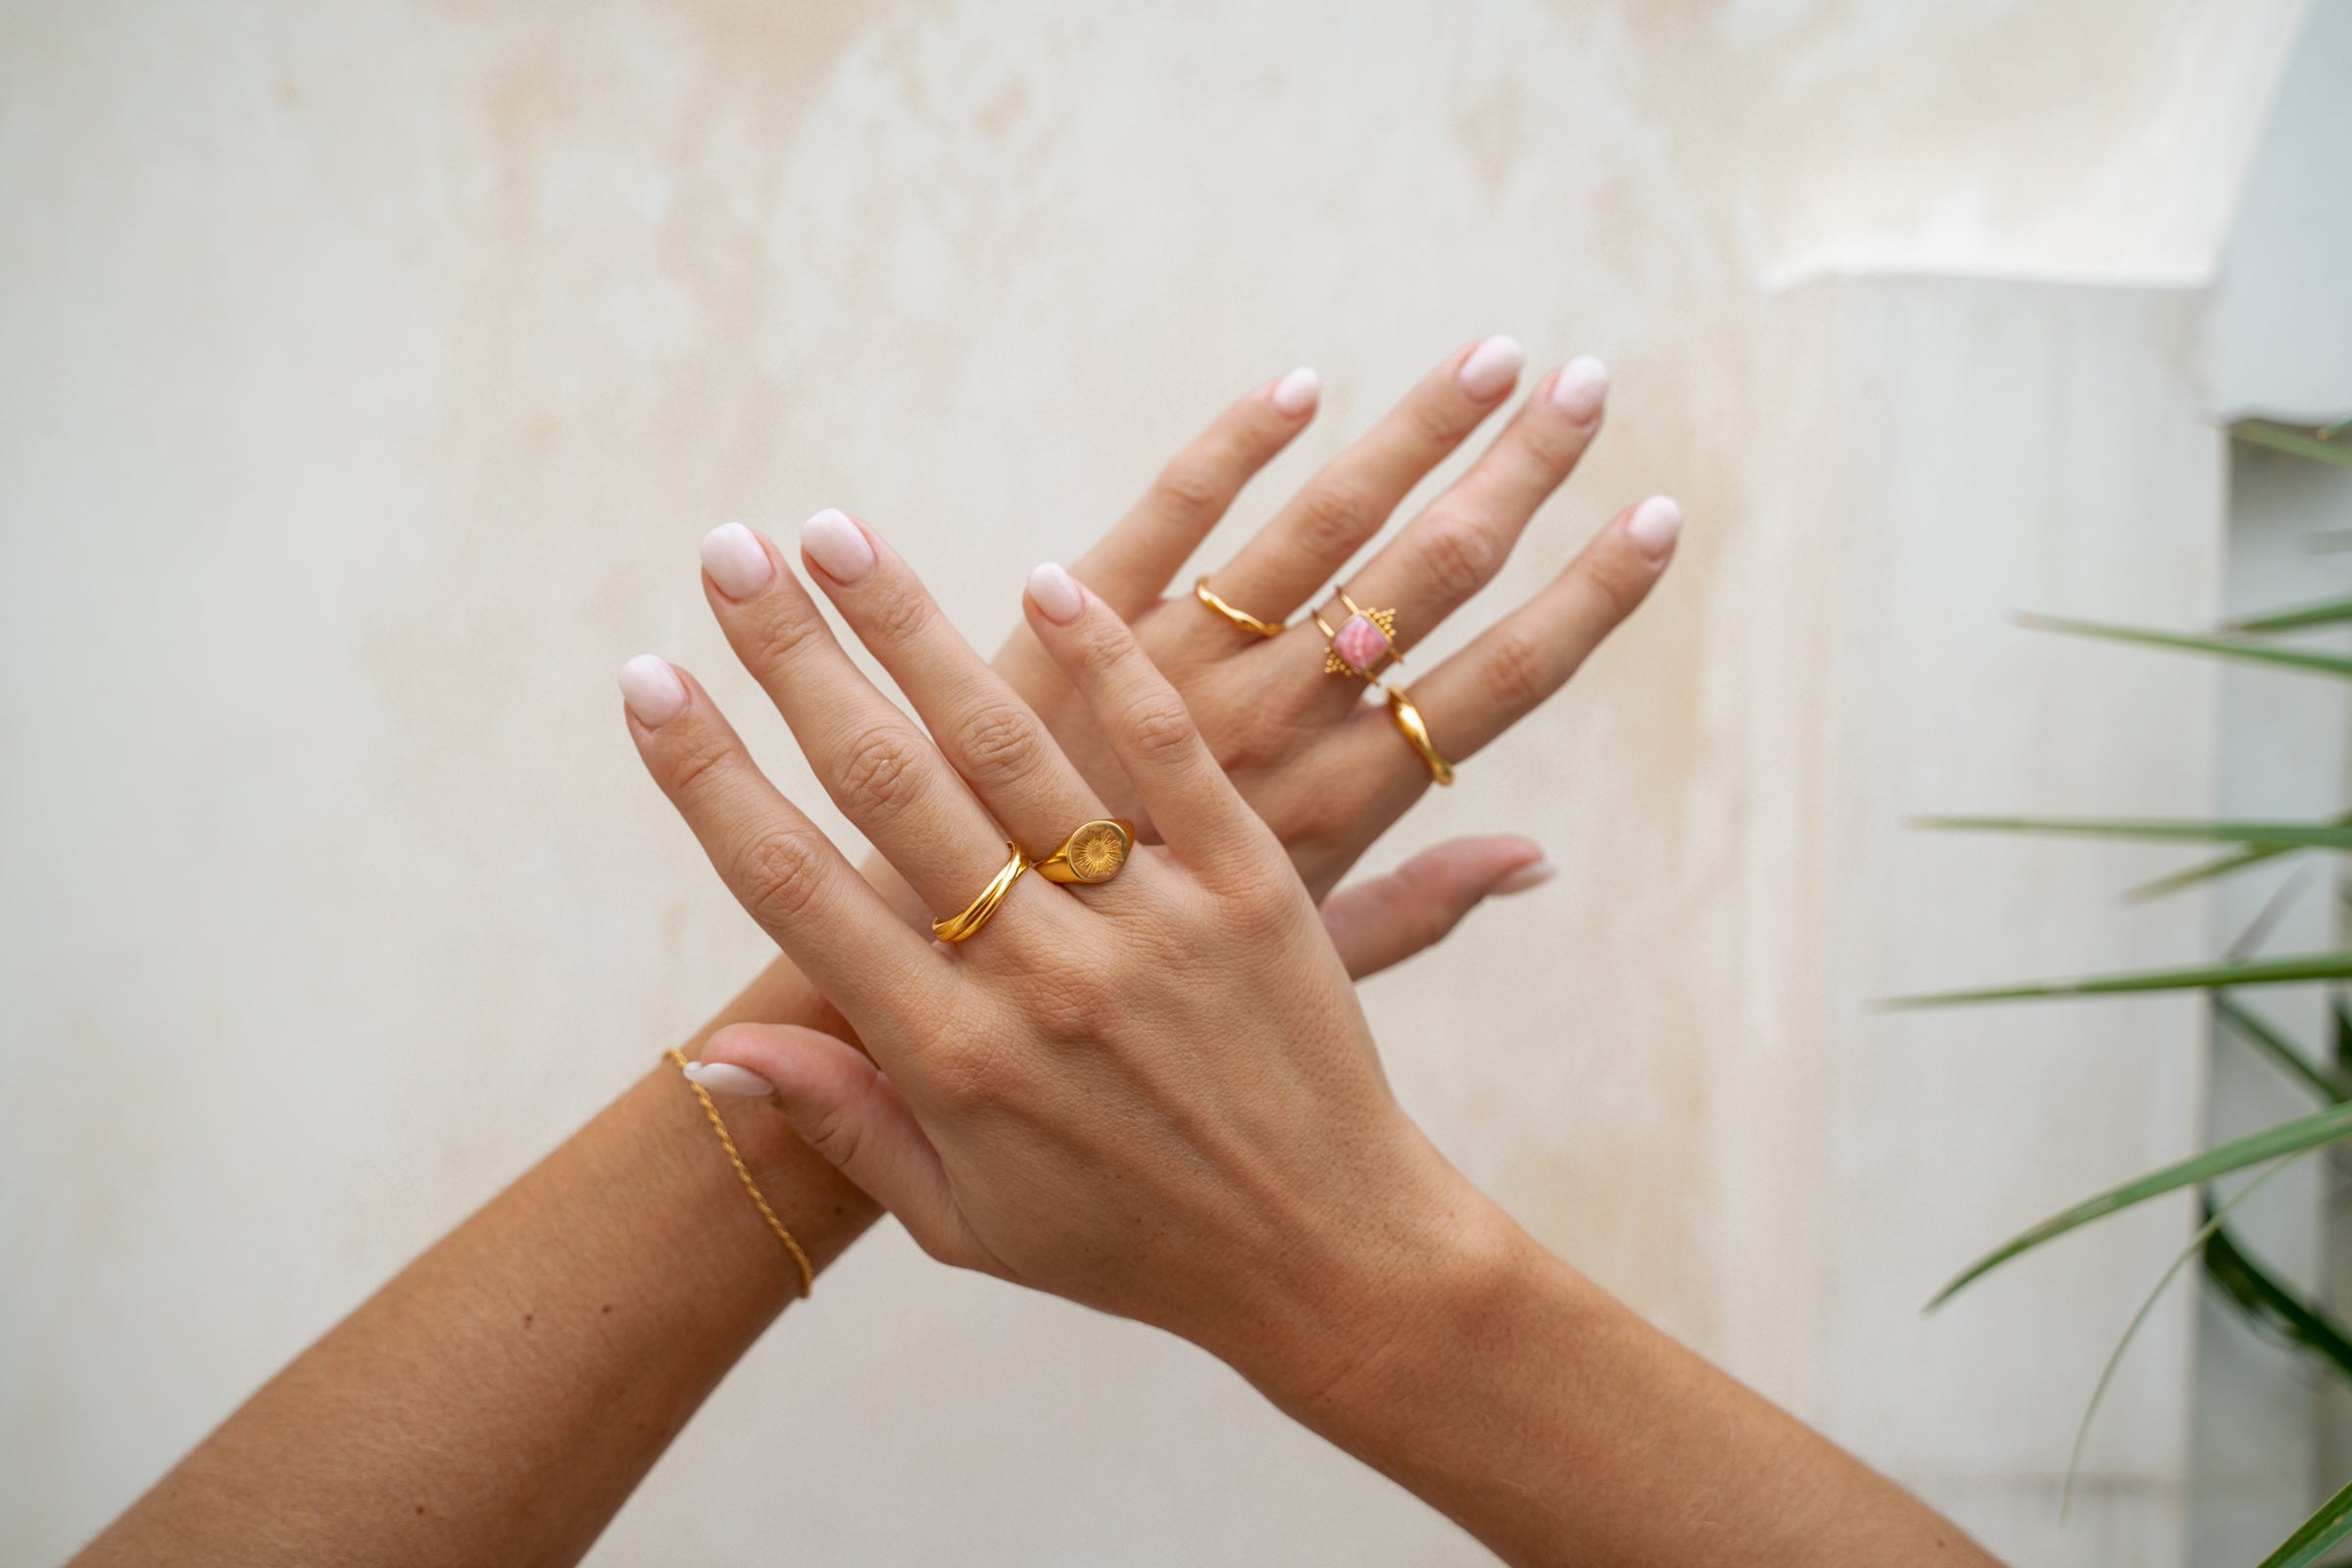 Goldschmuck online kaufen | Bali Boho Schmuck | Gold Ringe und Gold Ketten aus Bali |  Ringgröße messen | Ringgrößentabelle | fair und umweltschonend | Handgemachten Schmuck online kaufen |  Das perfekte Geschenk für Freundin finden bei VERLAN Jewellery